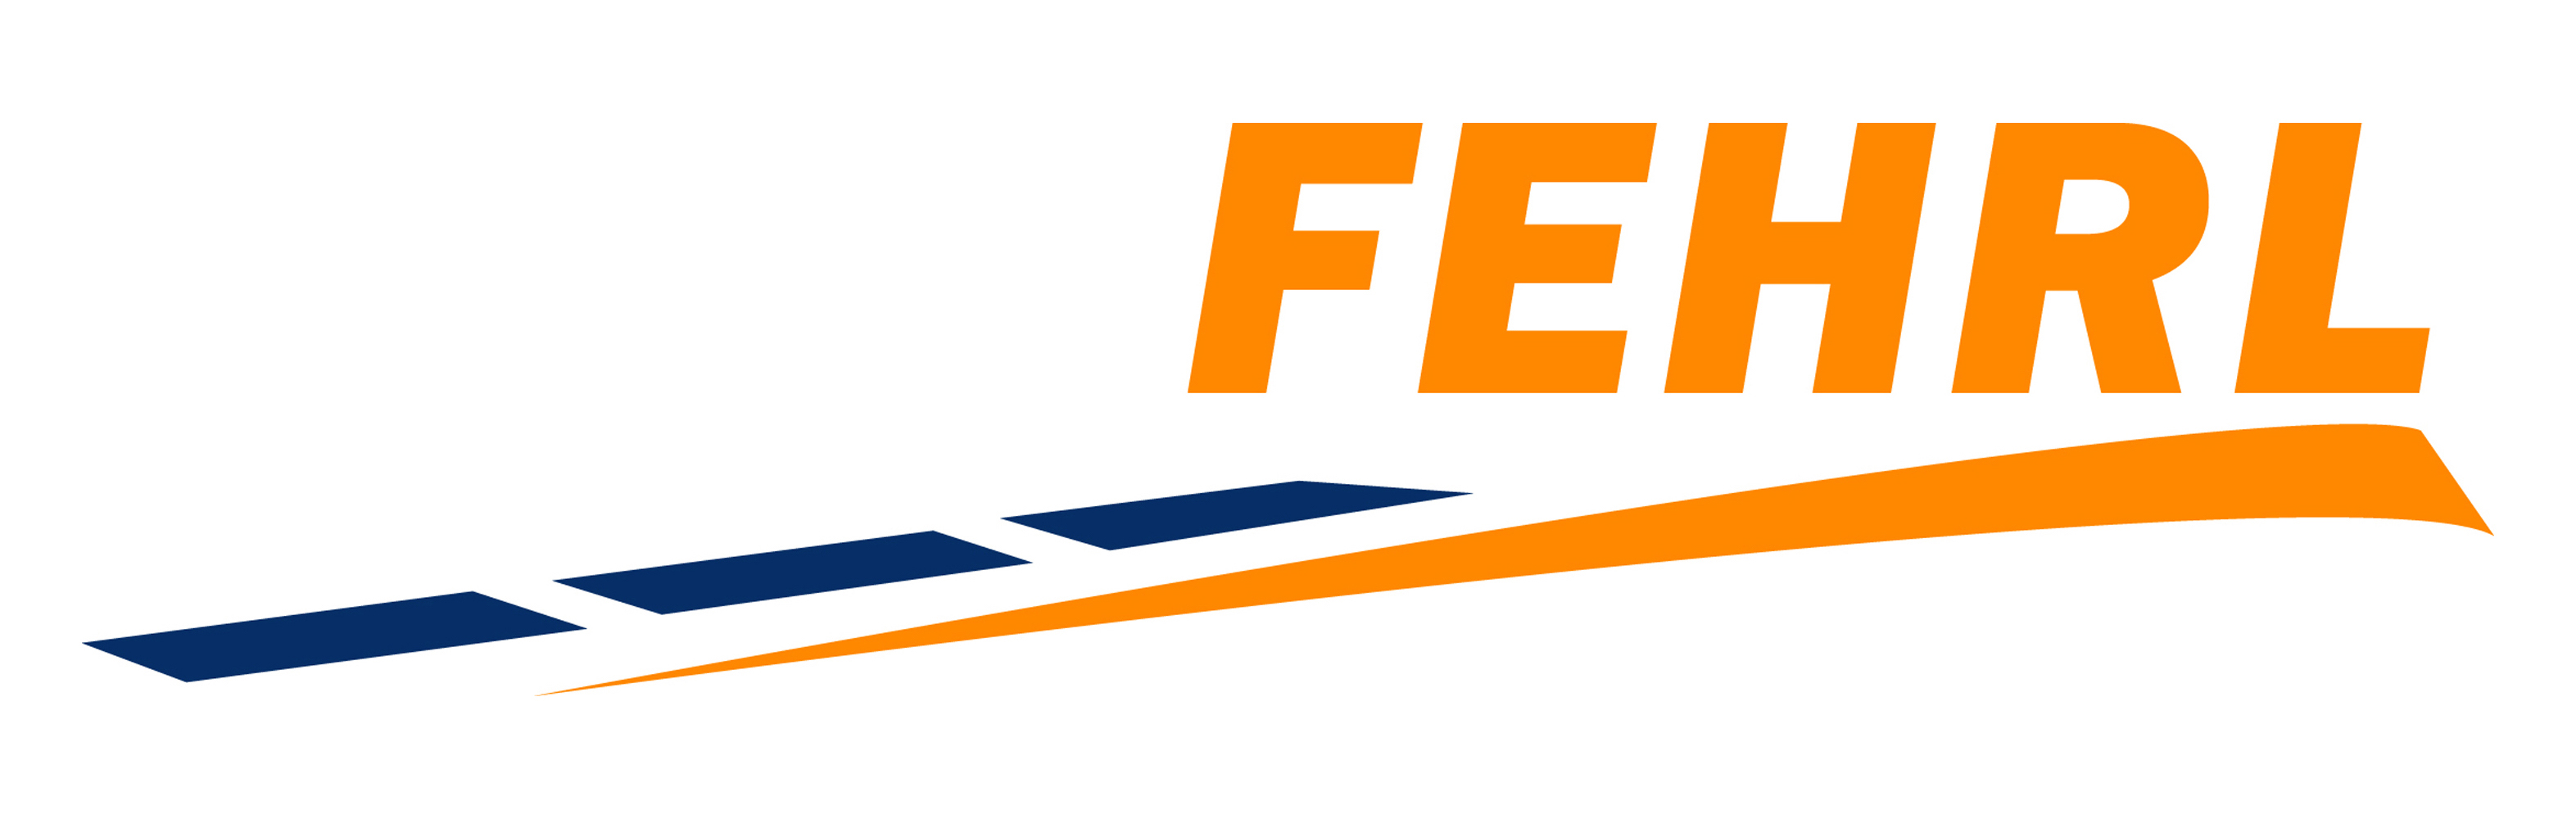 Logo FEHRL